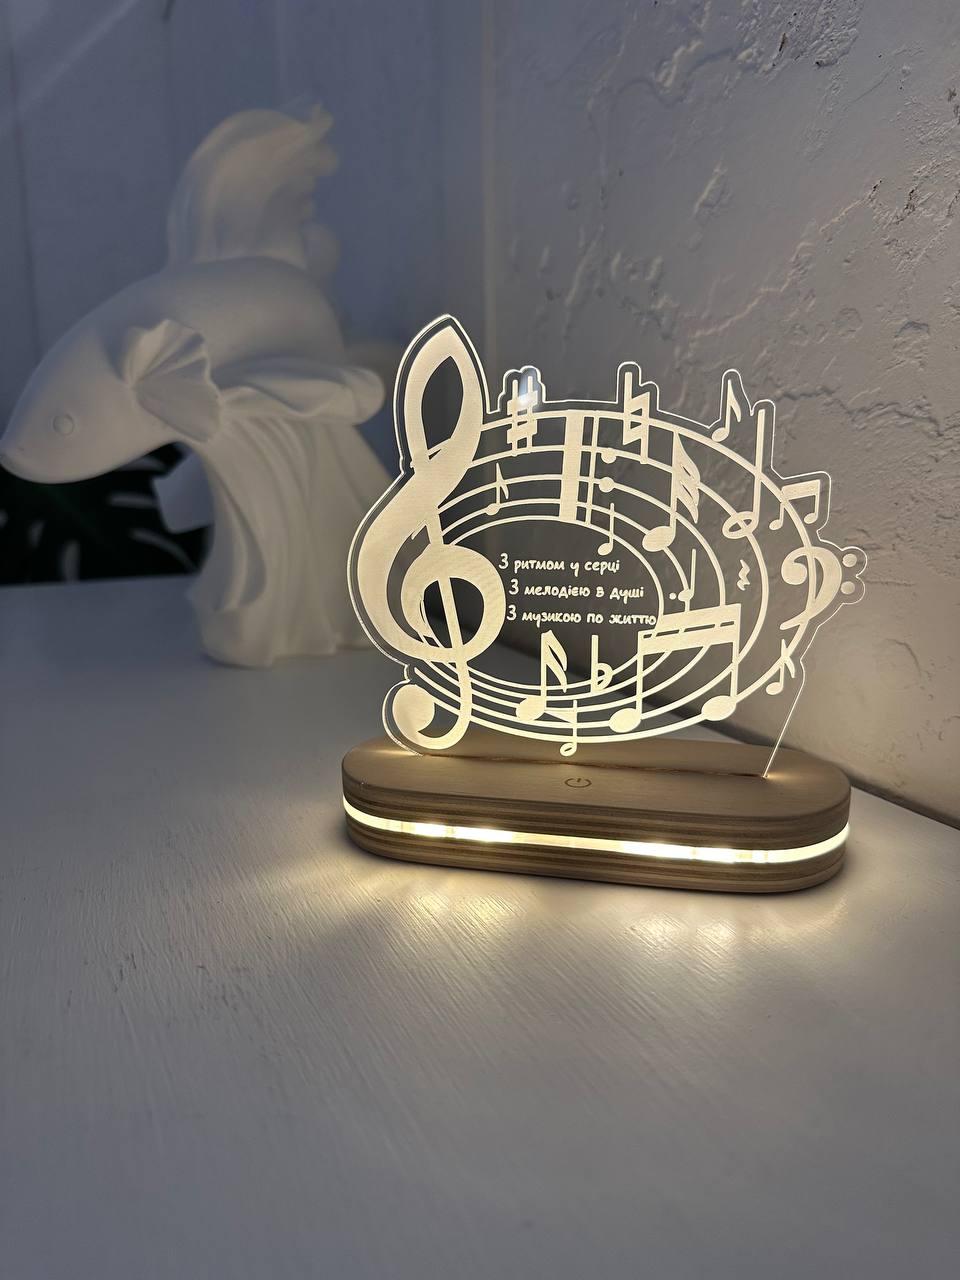 Світильник нічник подарунок для вчителя музики дошка сувенір 14 на 13см з USB роз'ємом